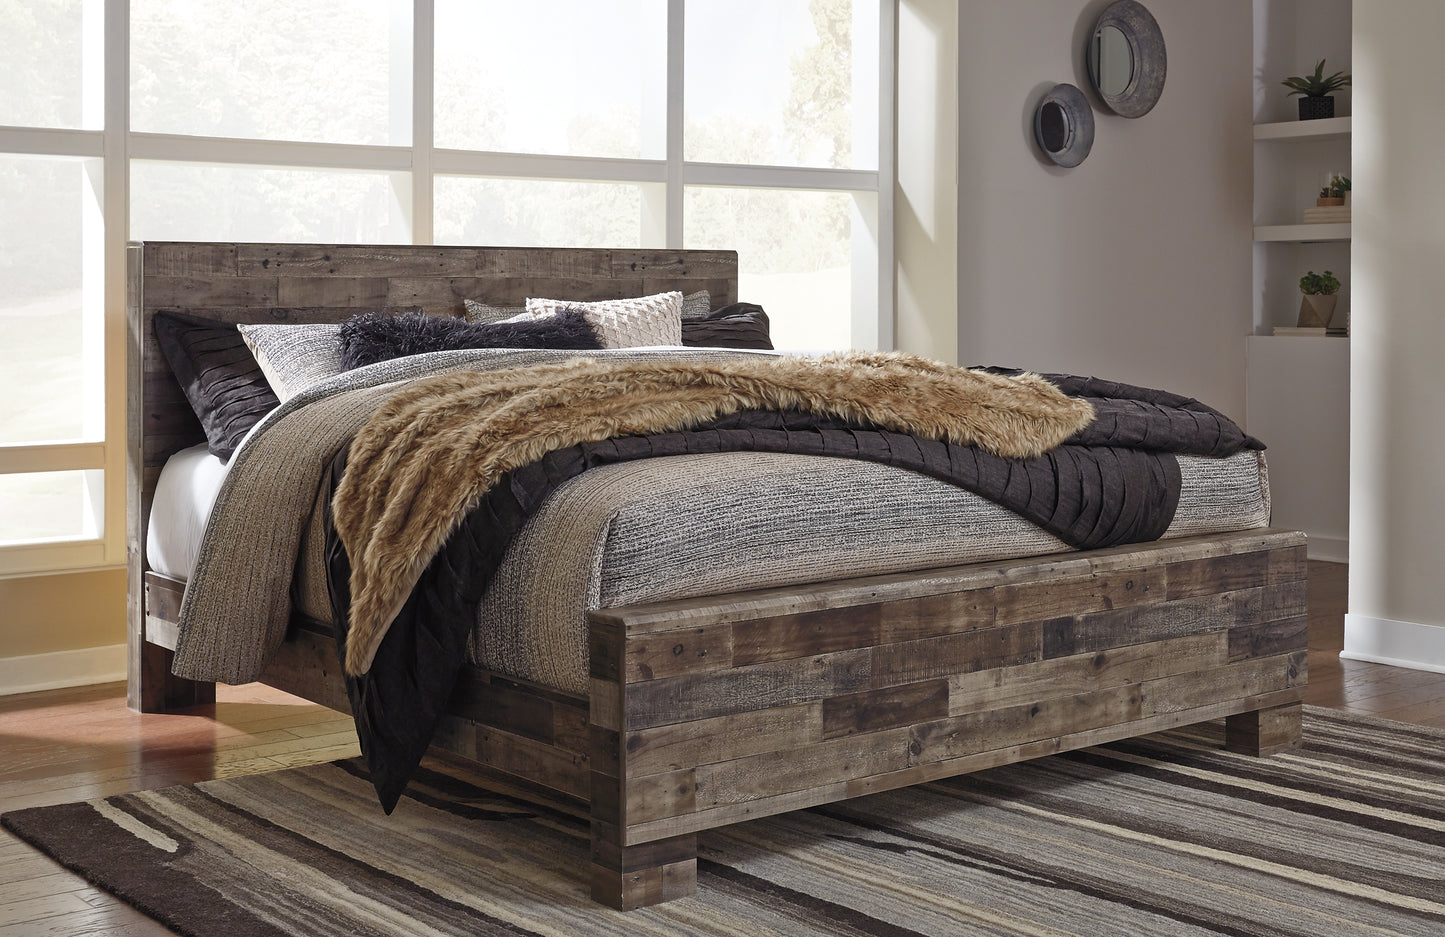 Derekson King Panel Bed with Mirrored Dresser Benchcraft®